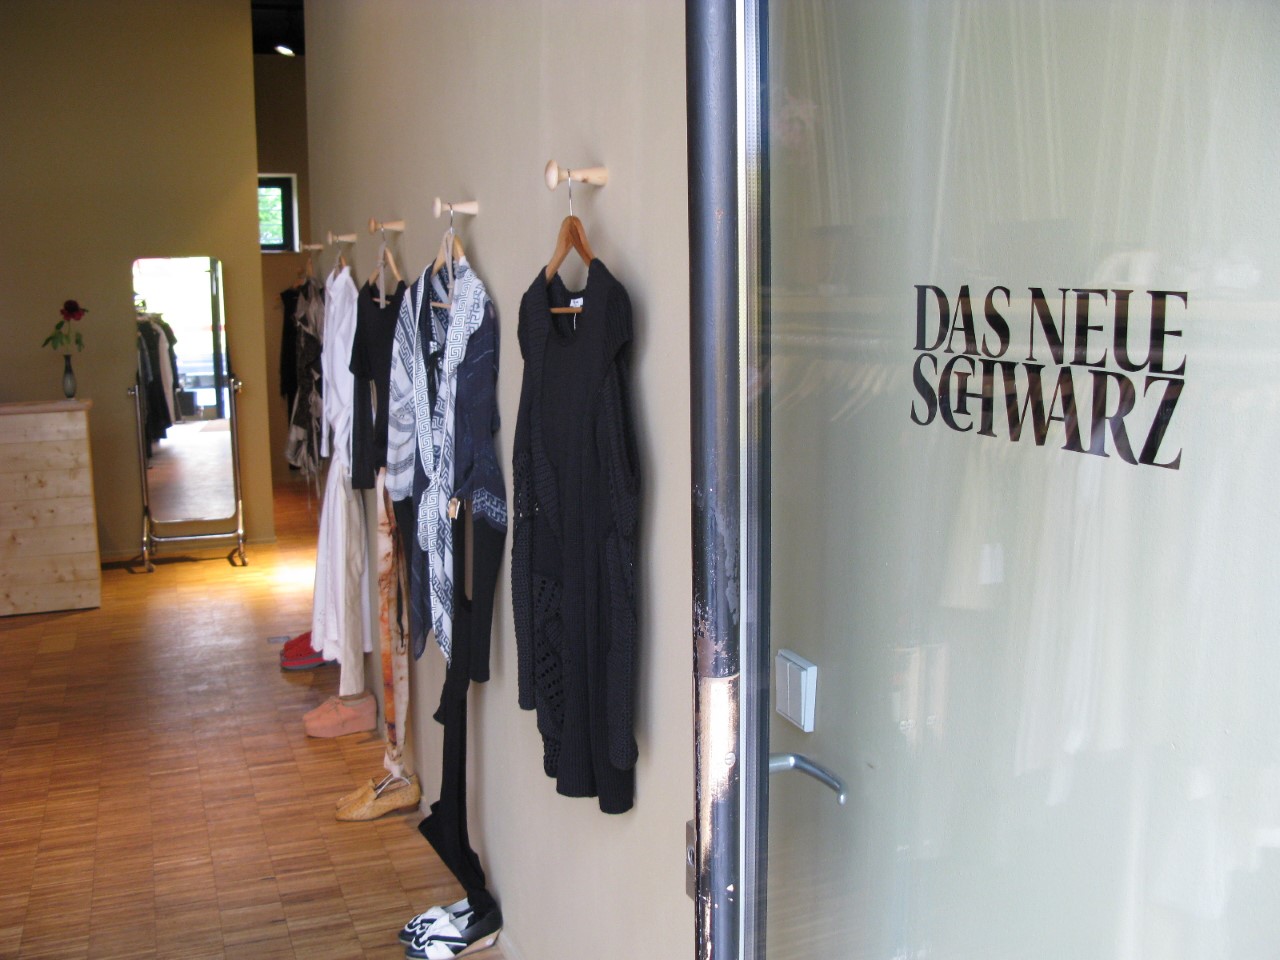 Vintage-Kleidung kaufen in Berlin Die schöne Auswahl, die das Neue Schwarz bietet, lässt Vintage-Herzen höher schlagen.